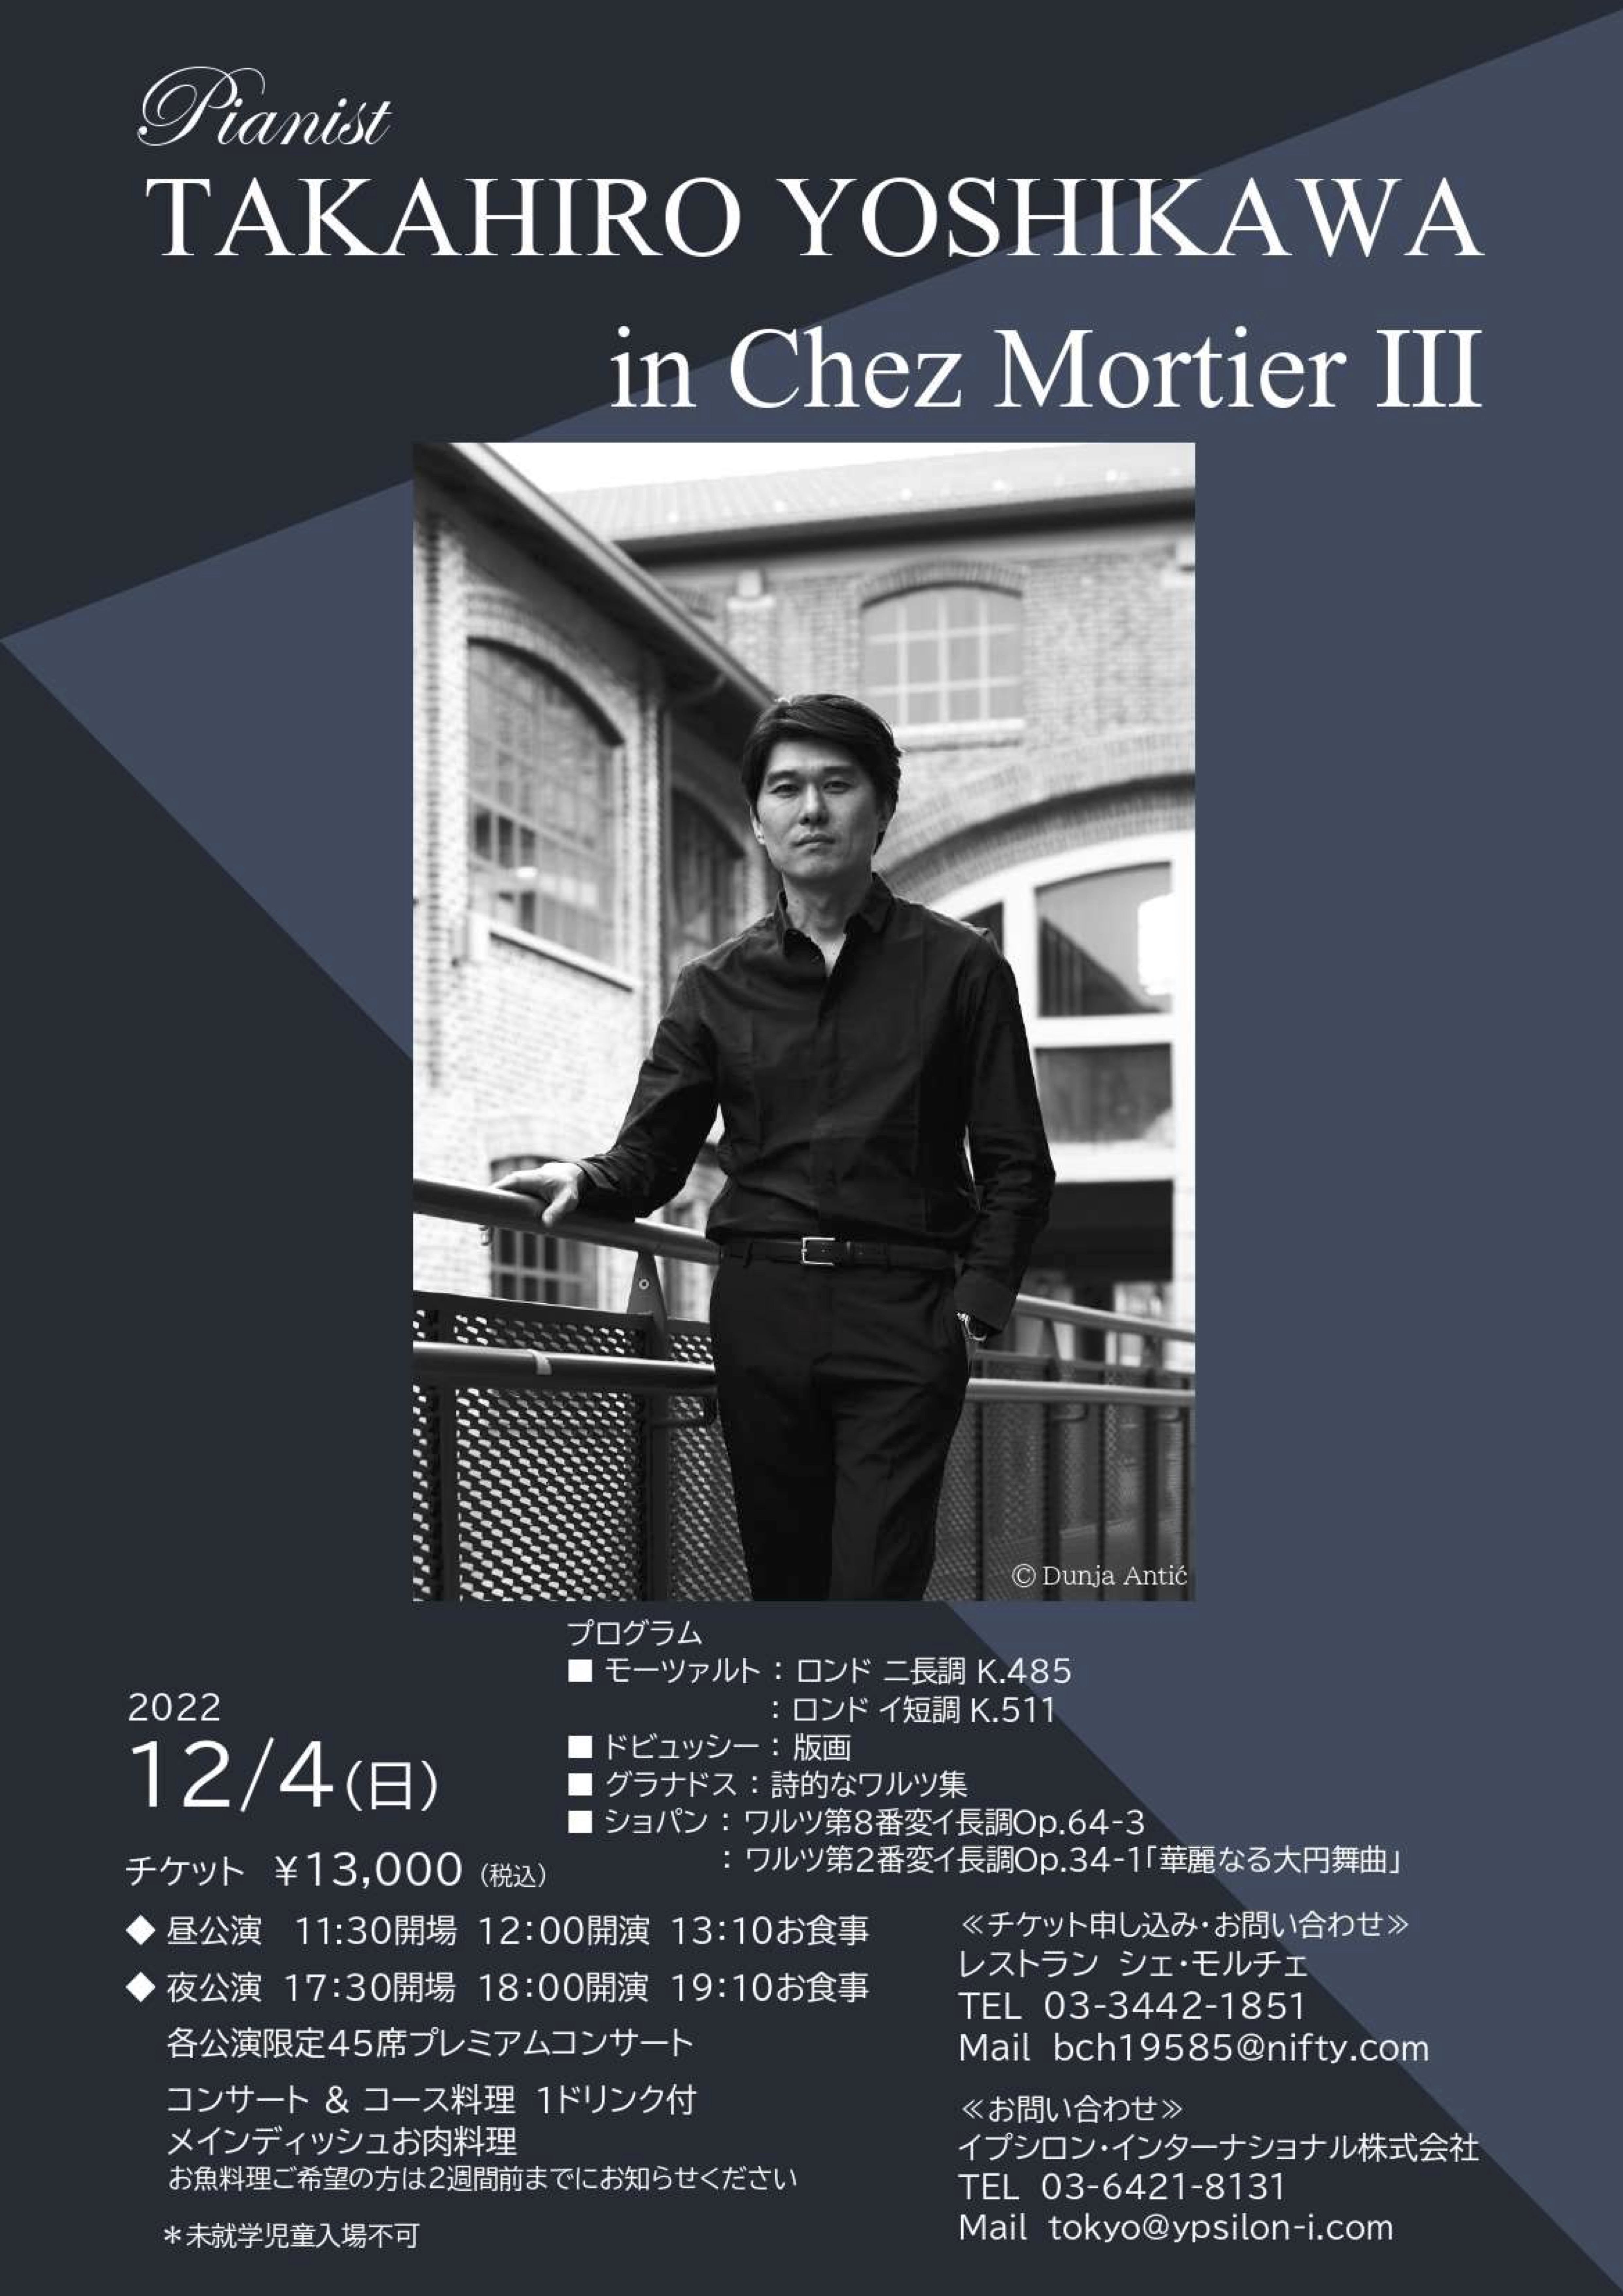 2022年12月4日(日)東京シェ・モルチェにてリサイタル | TAKAHIRO YOSHIKAWA